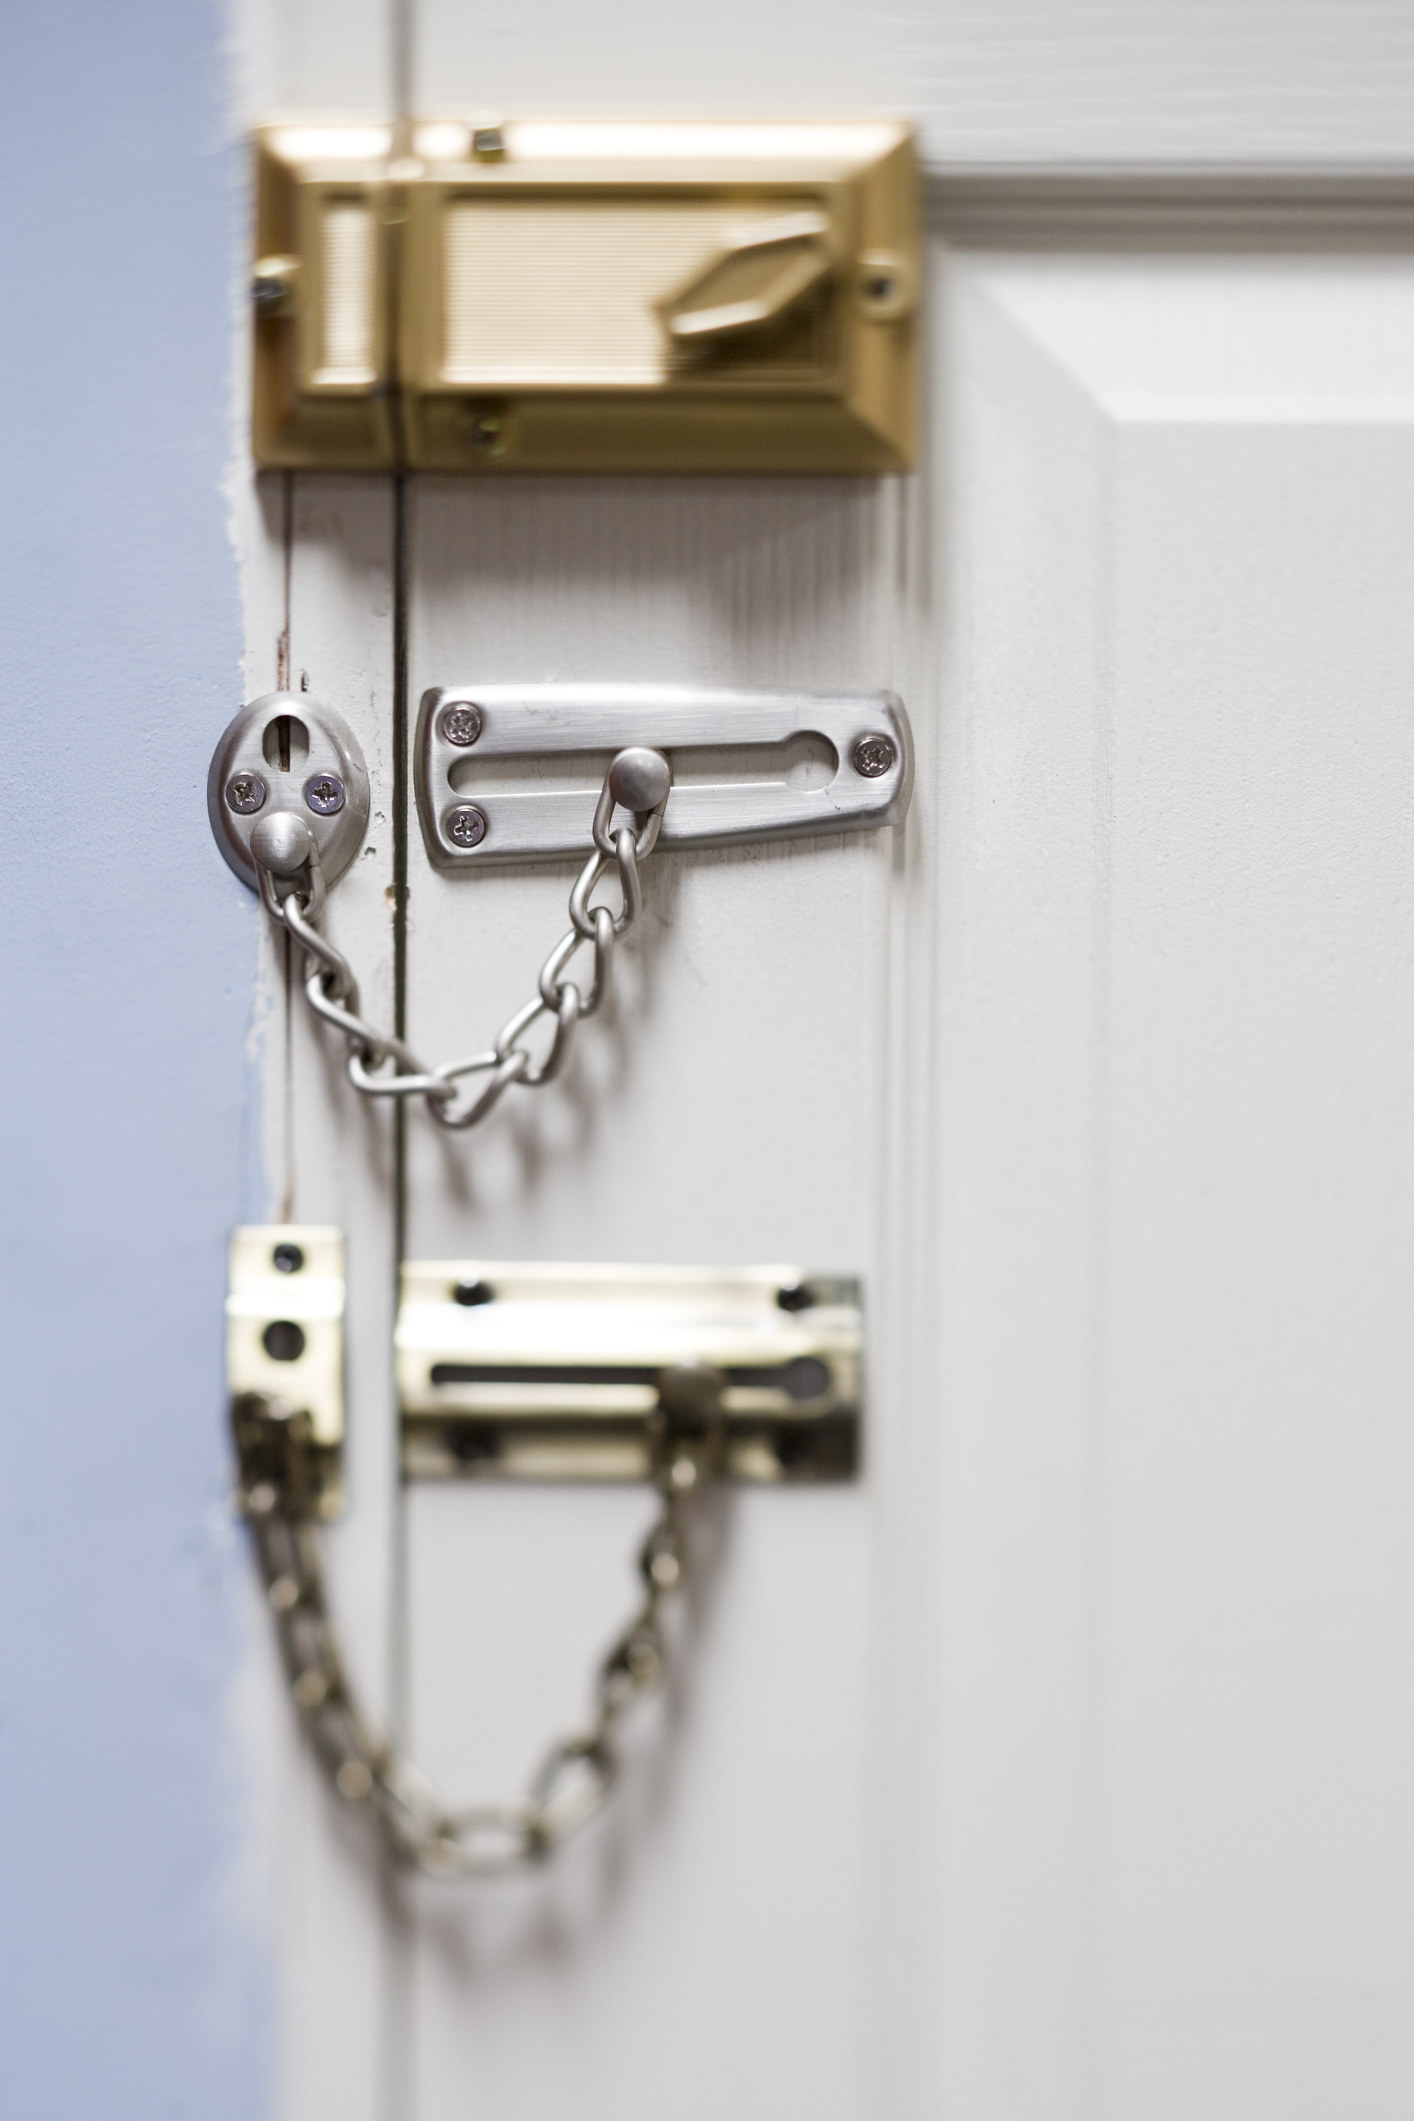 An arrangement of door locks